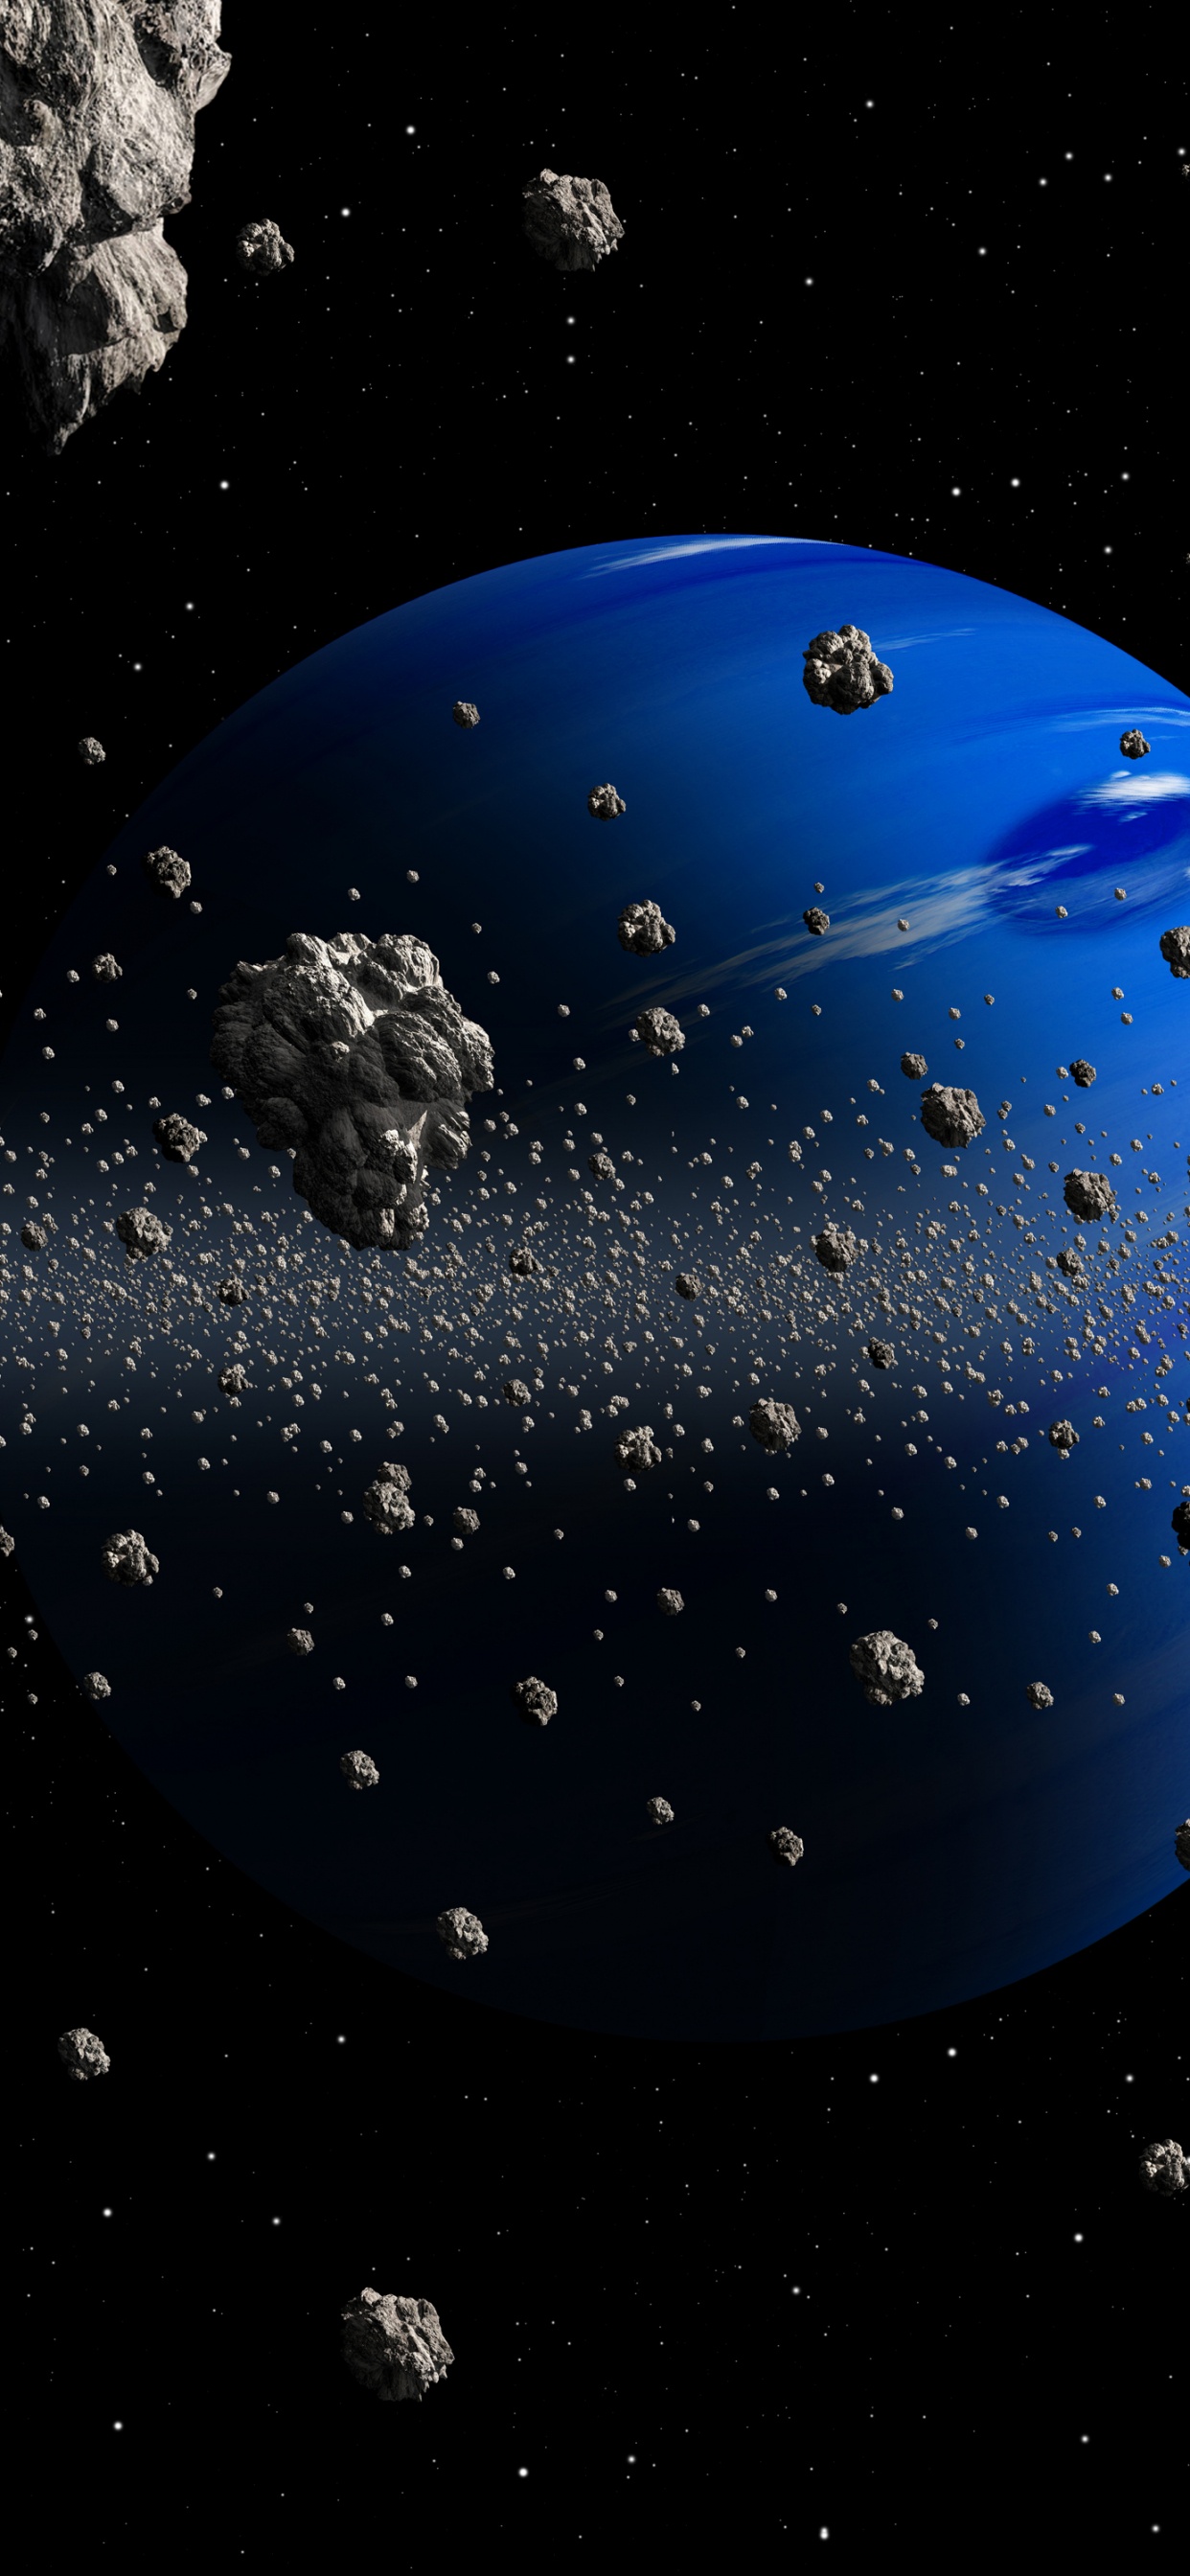 小行星, 这个星球, 空间, 外层空间, 天文学对象 壁纸 1242x2688 允许